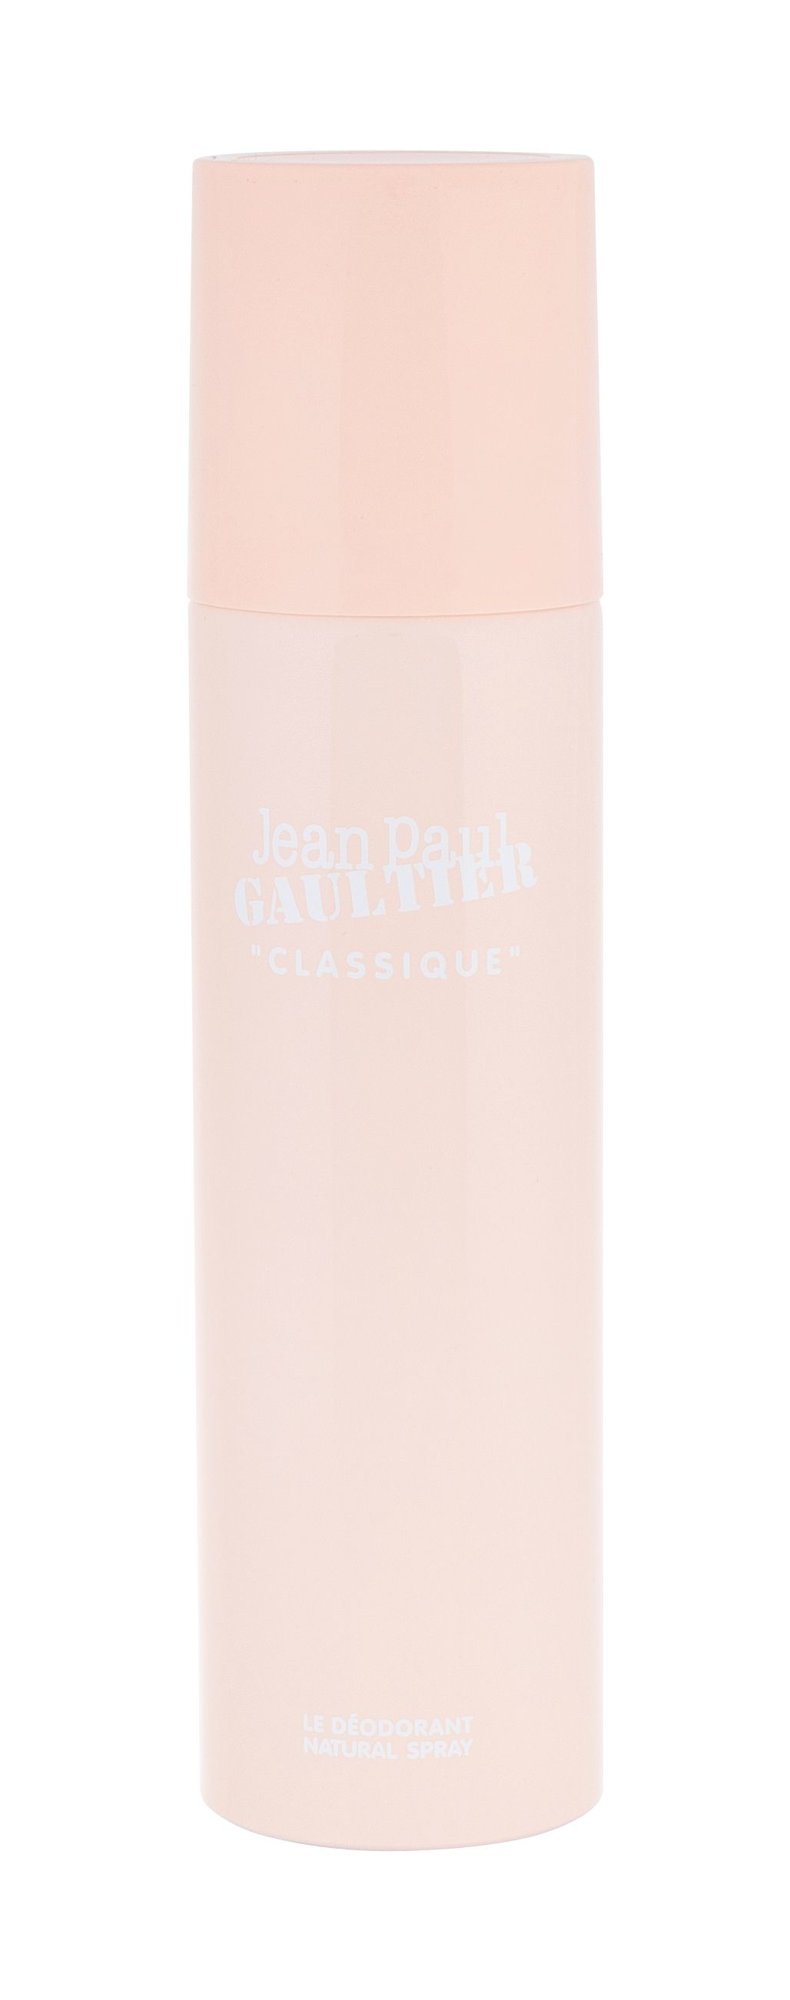 Jean Paul Gaultier Classique dezodorantas